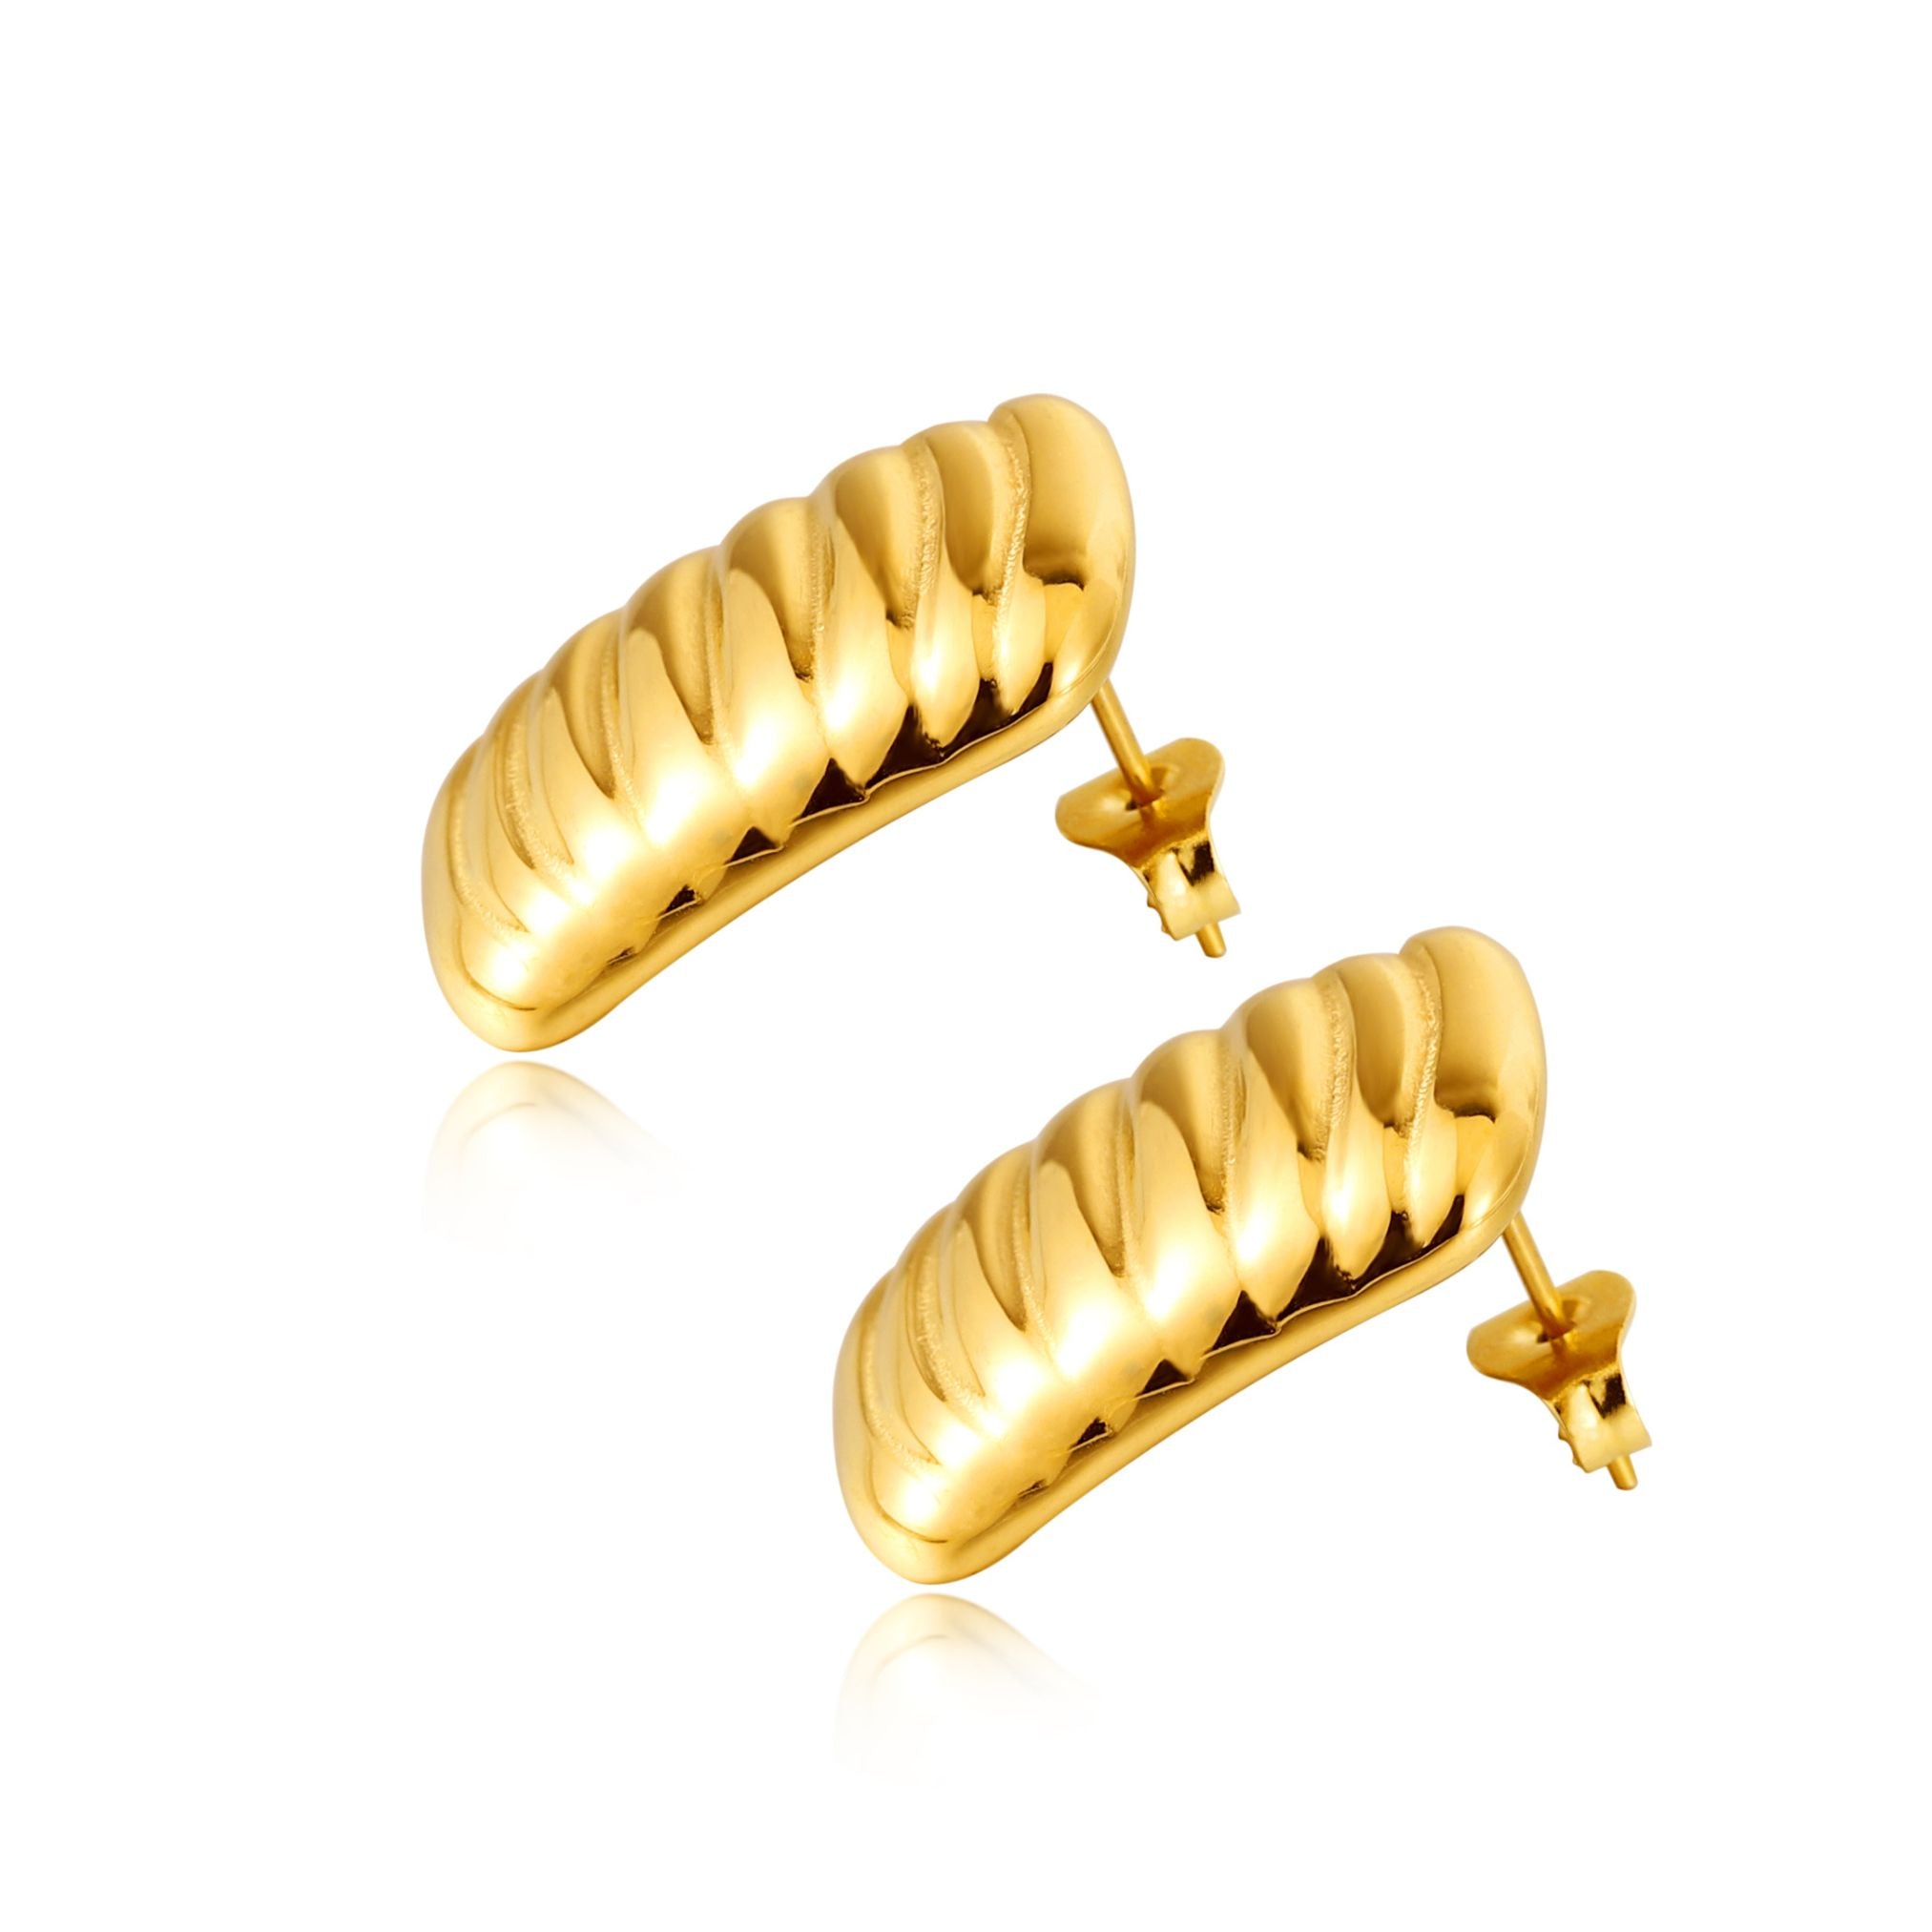 Flat gold earrings